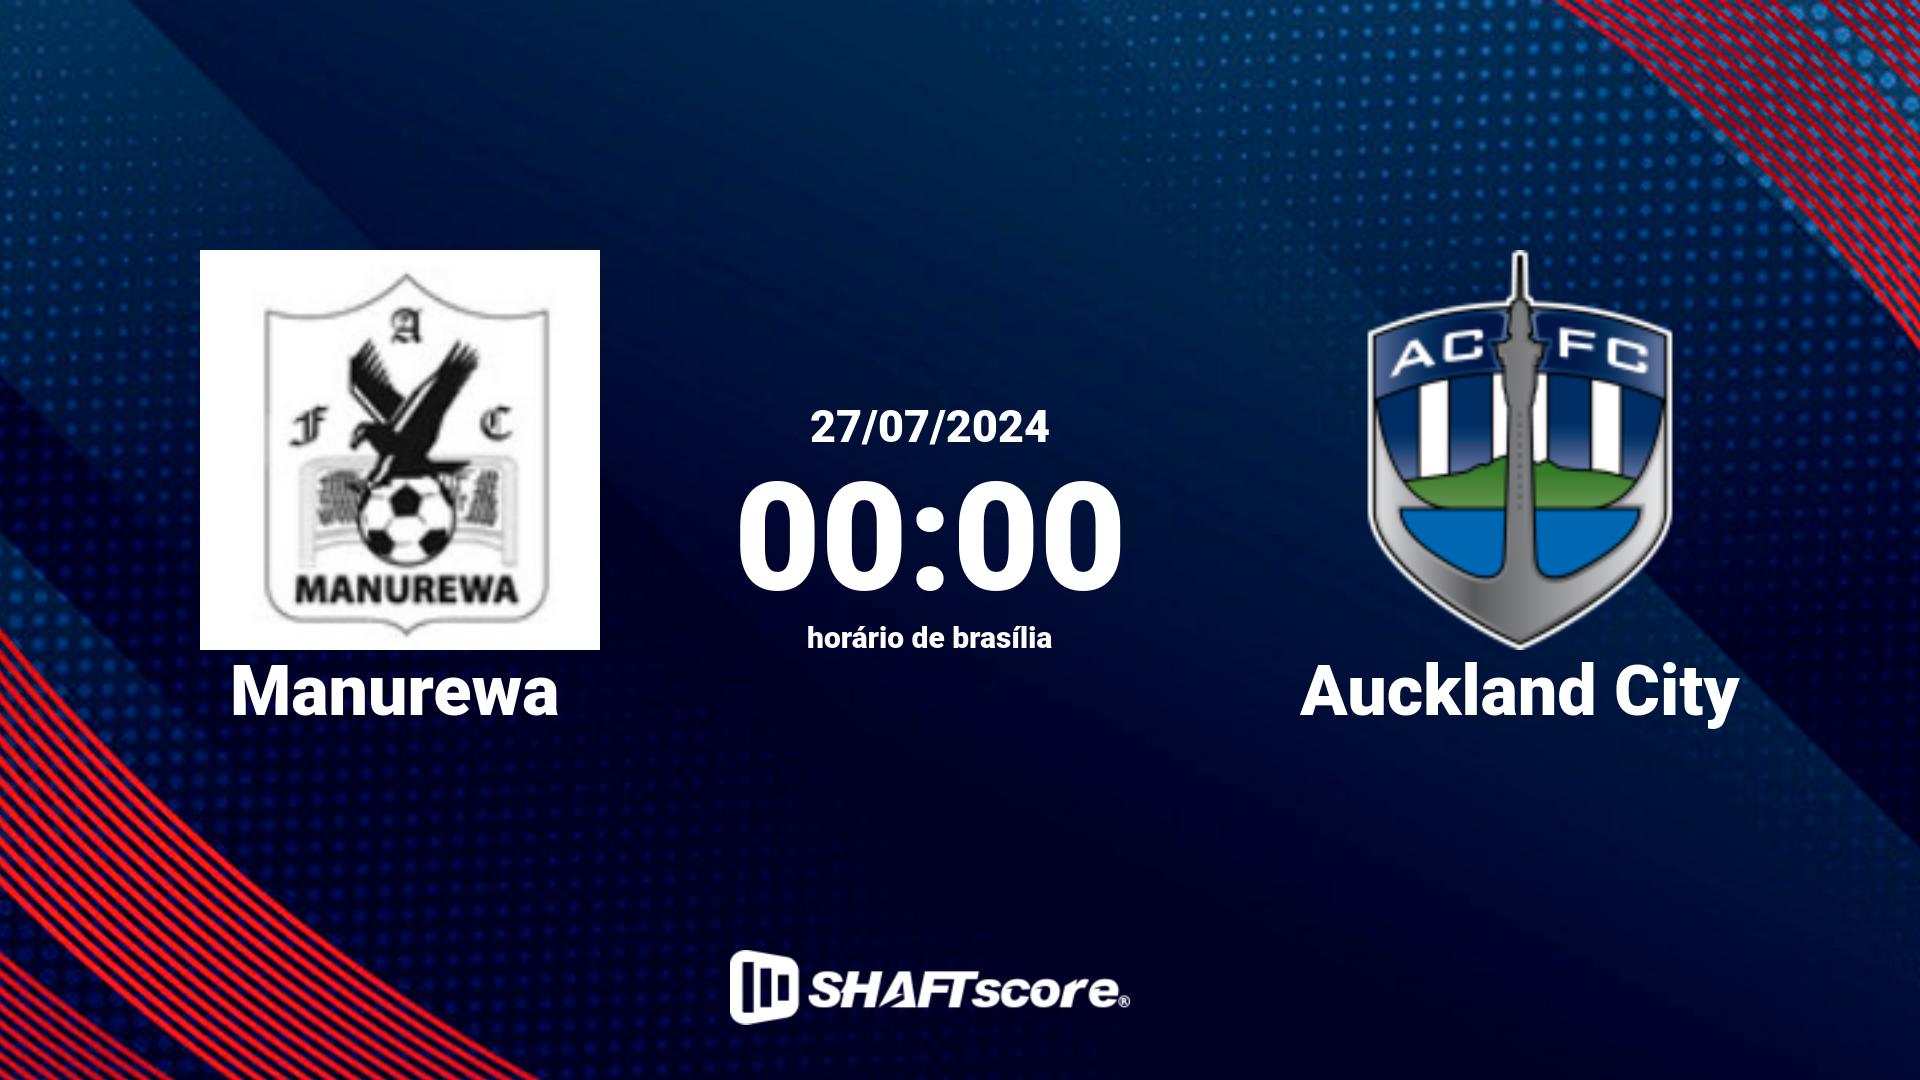 Estatísticas do jogo Manurewa vs Auckland City 27.07 00:00